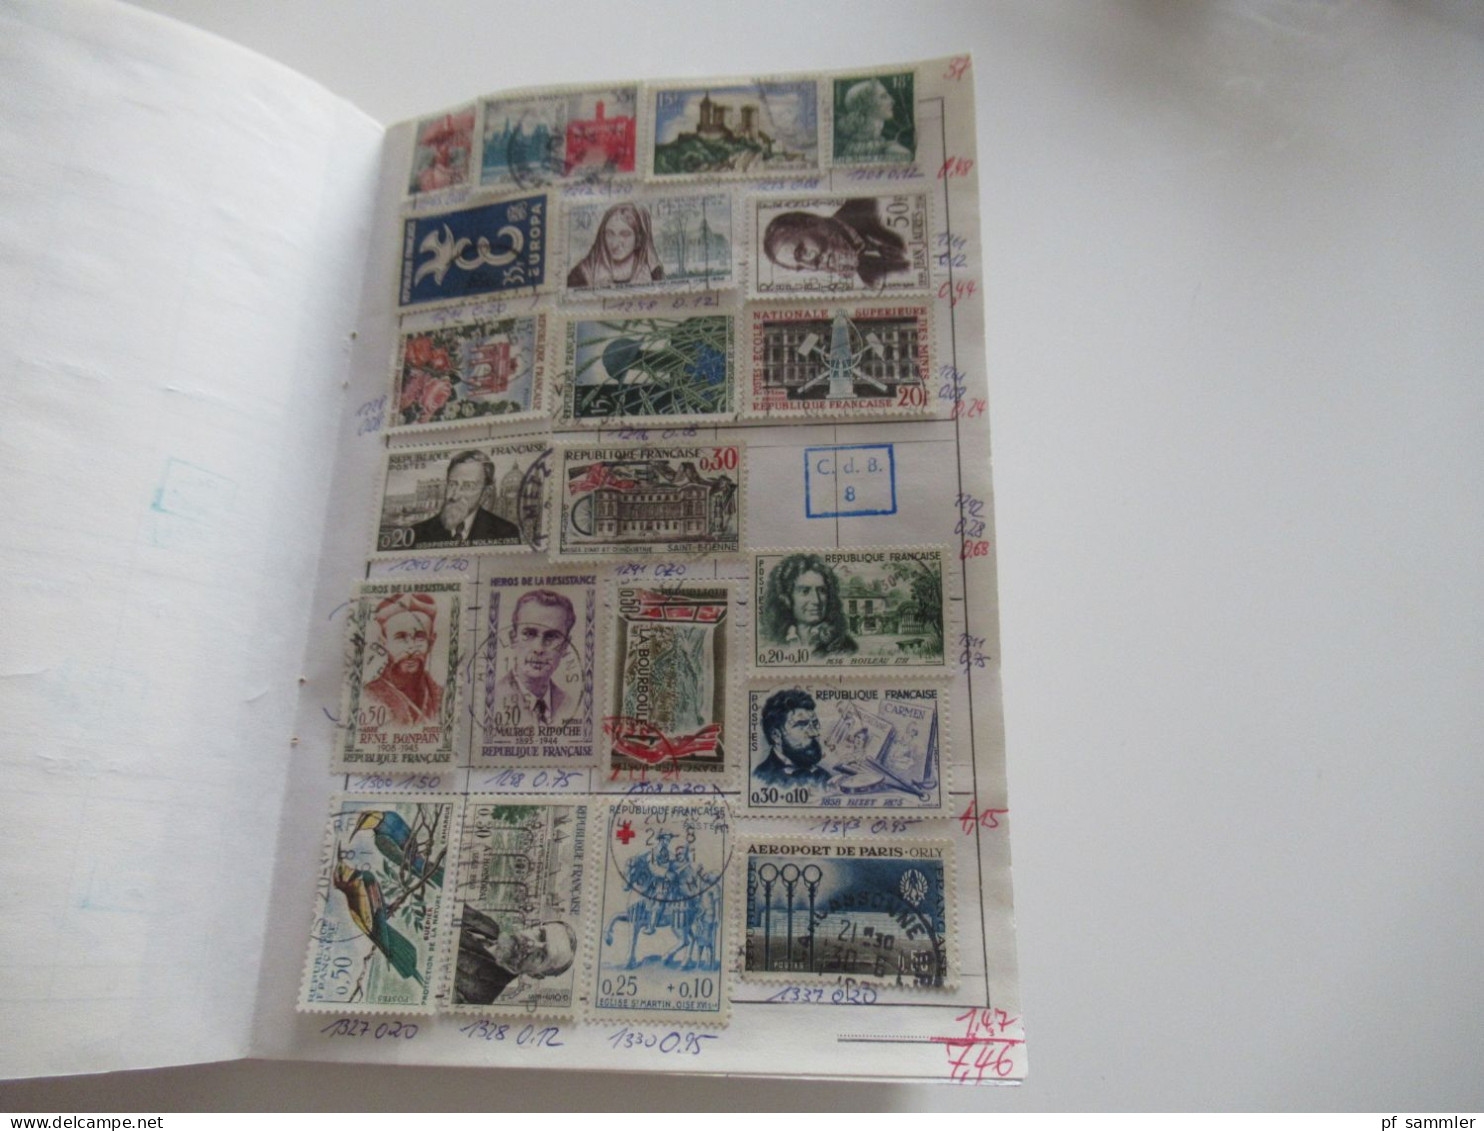 Sammlung / interessantes Auswahlheft Europa Frankreich ab Klassik - 1971 massenweise gestempelte Marken / Fundgrube!